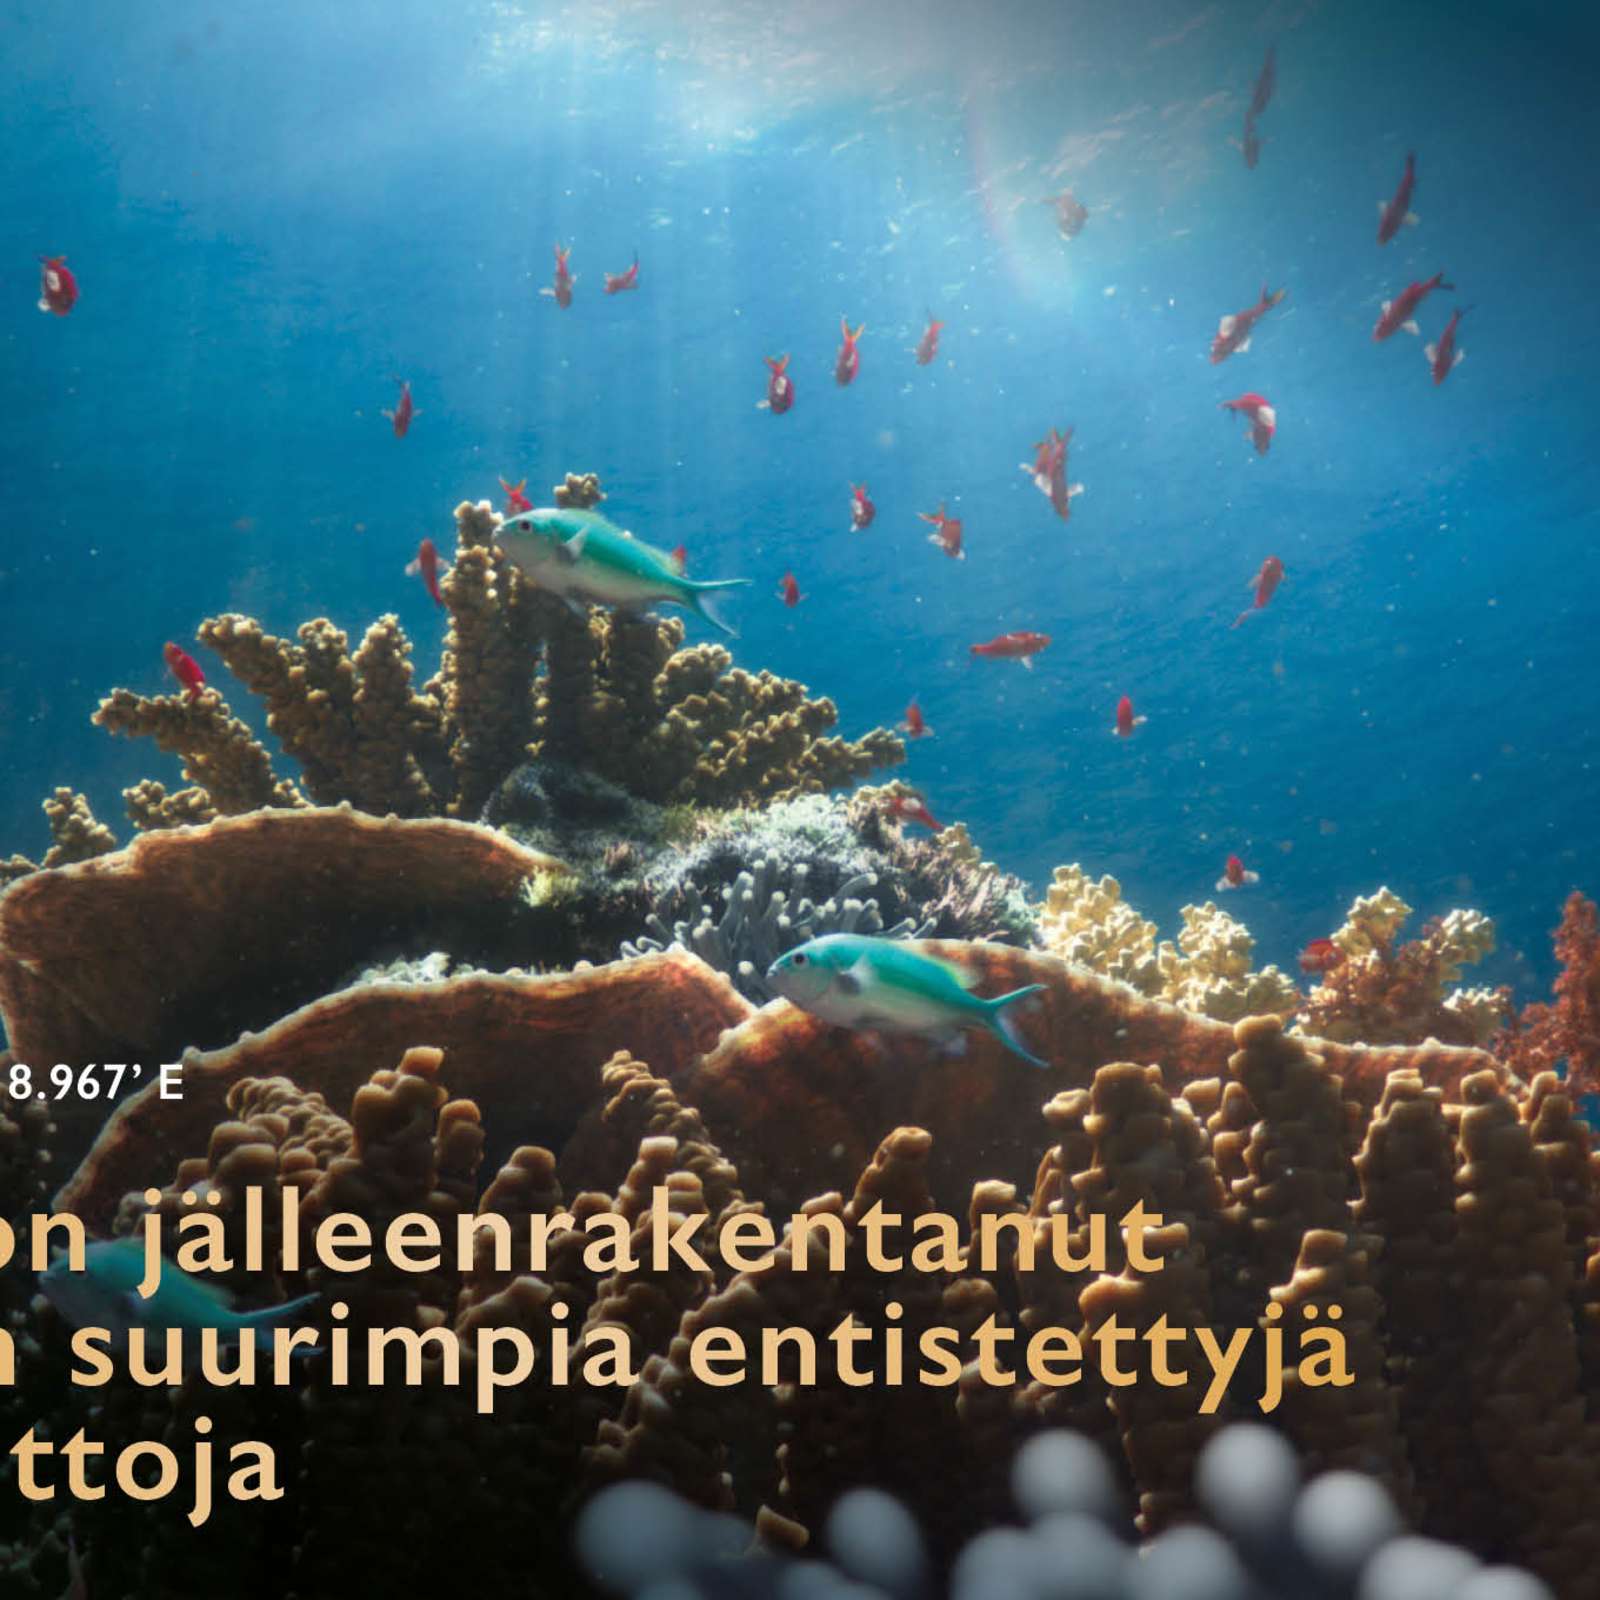 SHEBA® on jälleenrakentanut maailman suurimpia entistettyjä koralliriuttoja